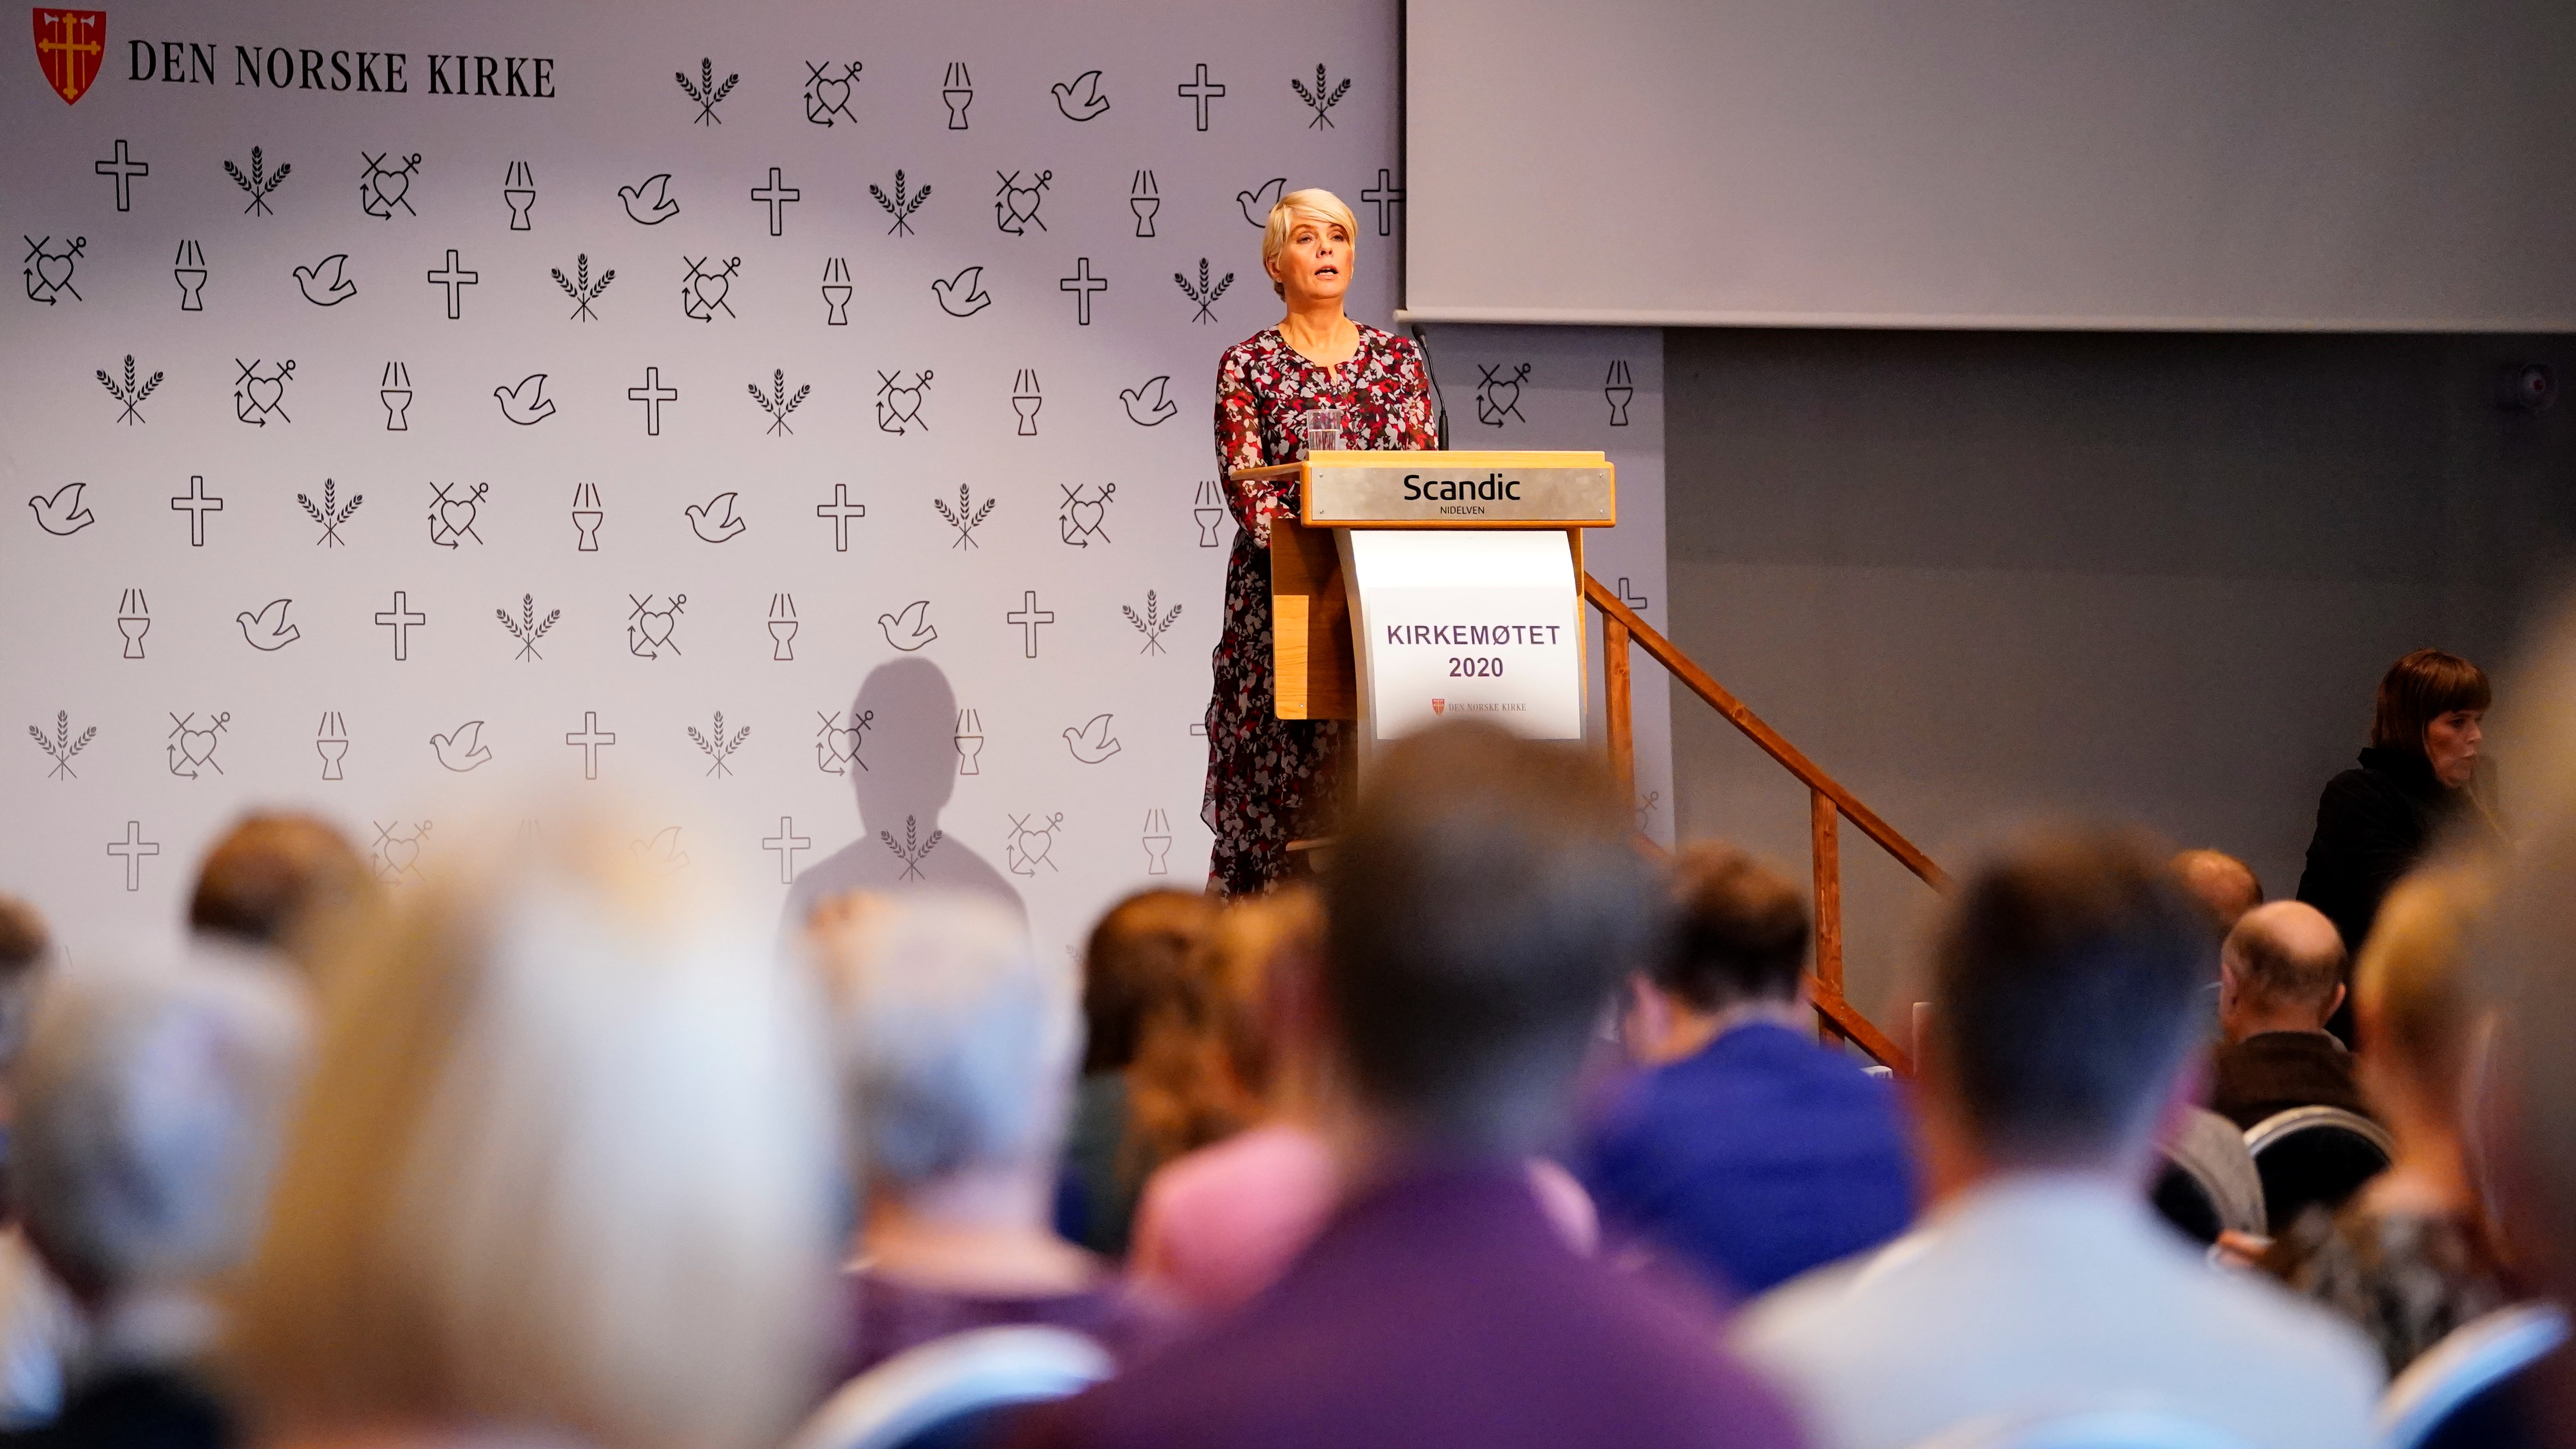 Kirkerådsleder Kristin Gunleiksrud Raaum under åpningen av Kirkemøtet 2020 som også var utsatt av pandemien. Foto: Ole Martin Wold.